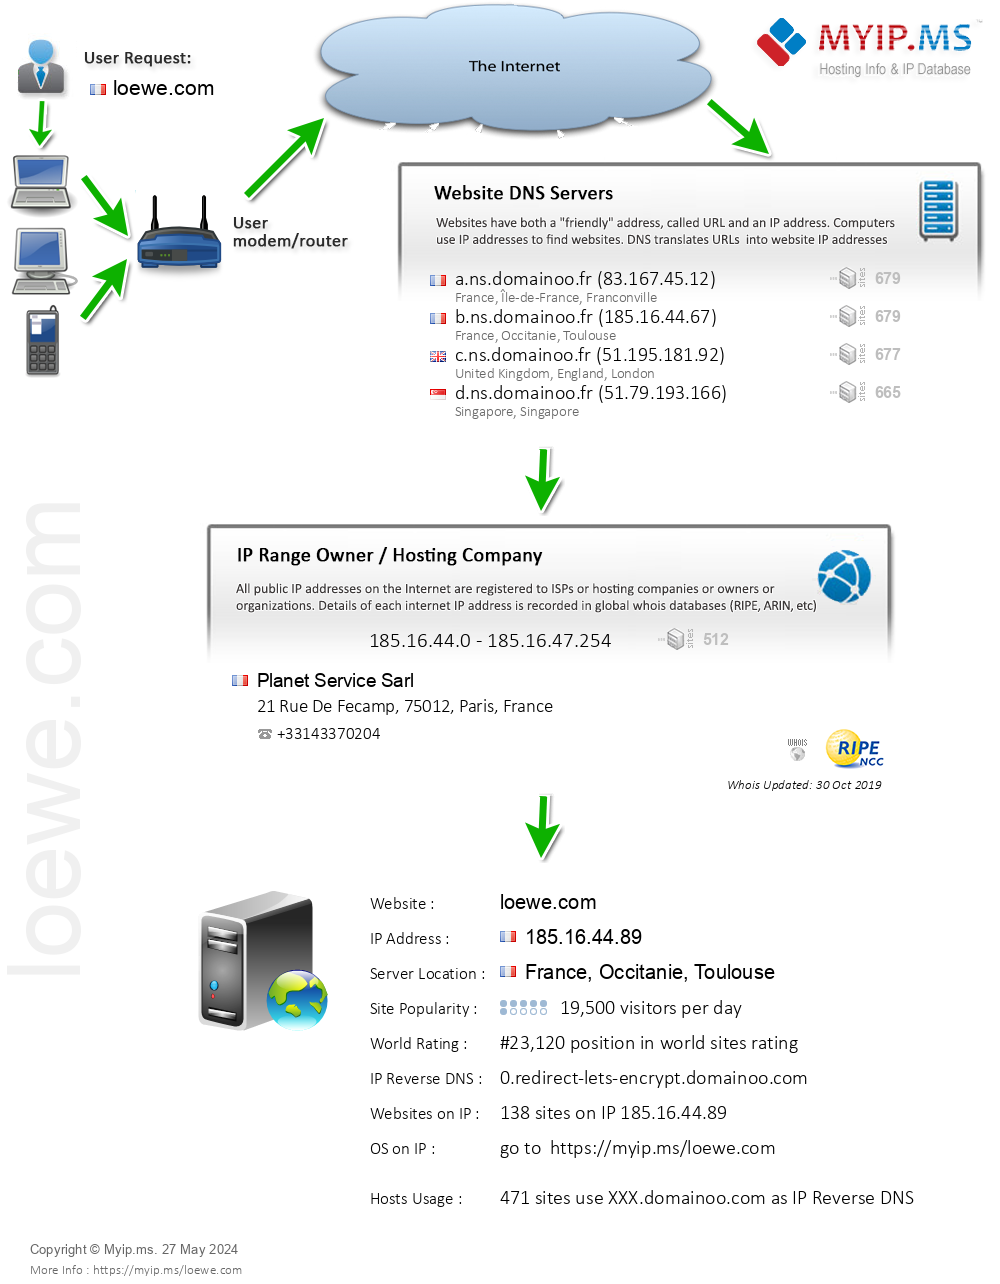 Loewe.com - Website Hosting Visual IP Diagram